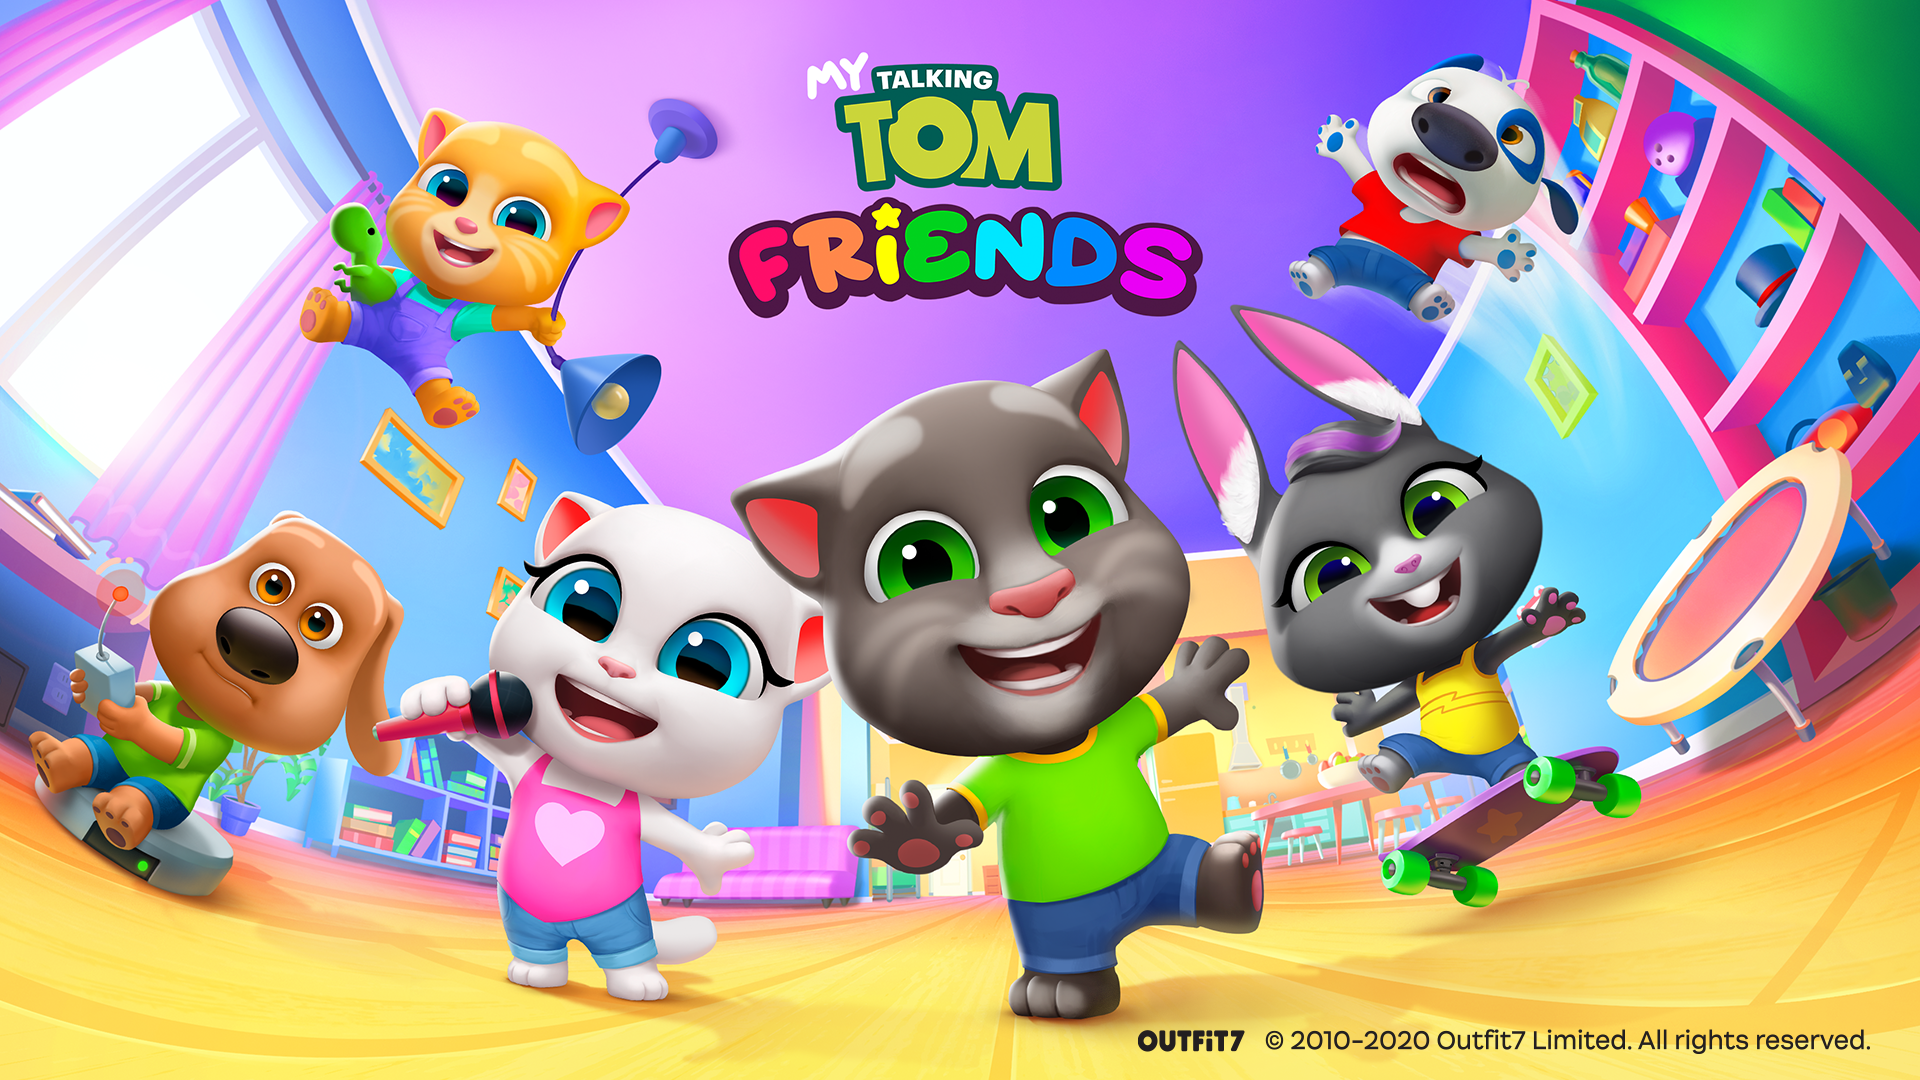 Том лучшие друзья игра. Говорящий том и его друзья игра. Мой говорящий том друзья 1.0.1.1403. Игра talking Tom friends Джинджер. Том и друзья.